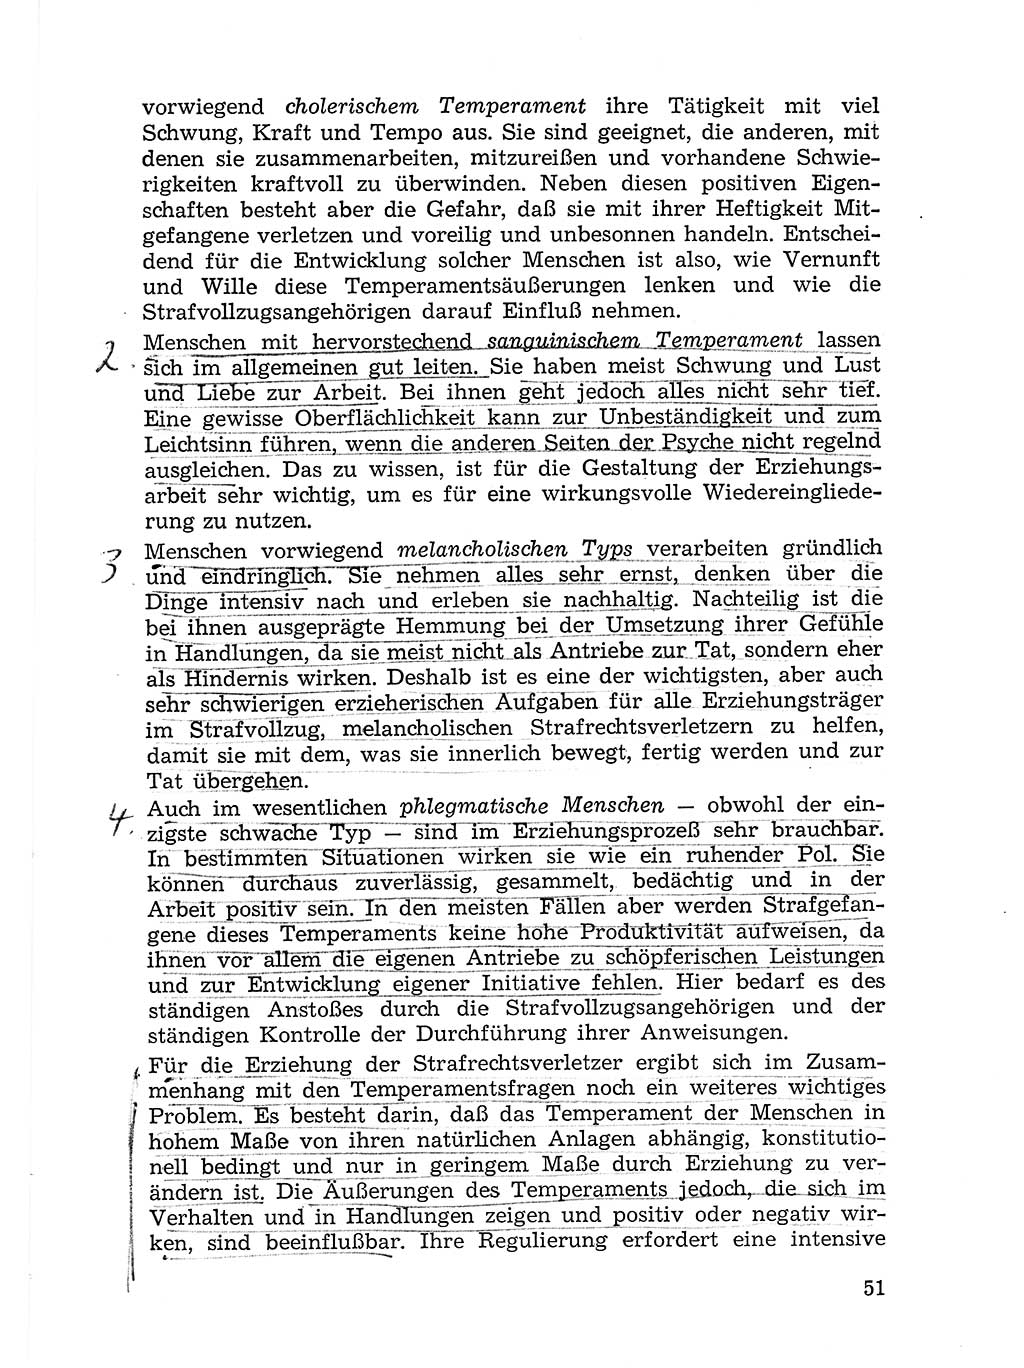 Sozialistischer Strafvollzug (SV) [Deutsche Demokratische Republik (DDR)] 1972, Seite 51 (Soz. SV DDR 1972, S. 51)